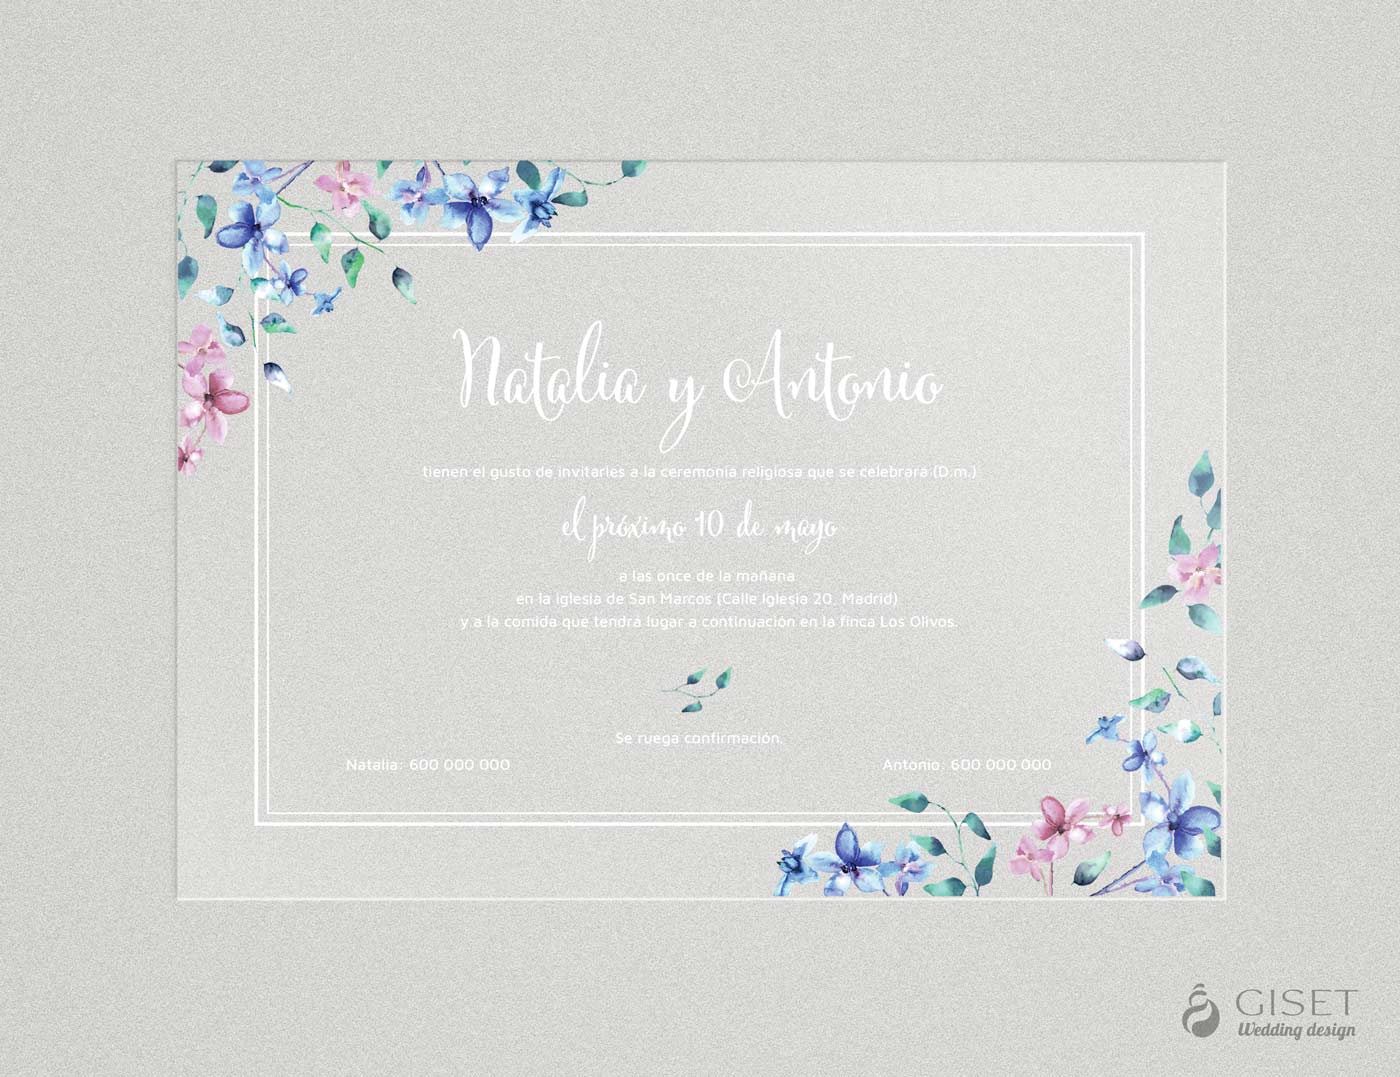 Invitaciones de boda transparentes con flores azules y rosas en acuarela -  Giset Wedding